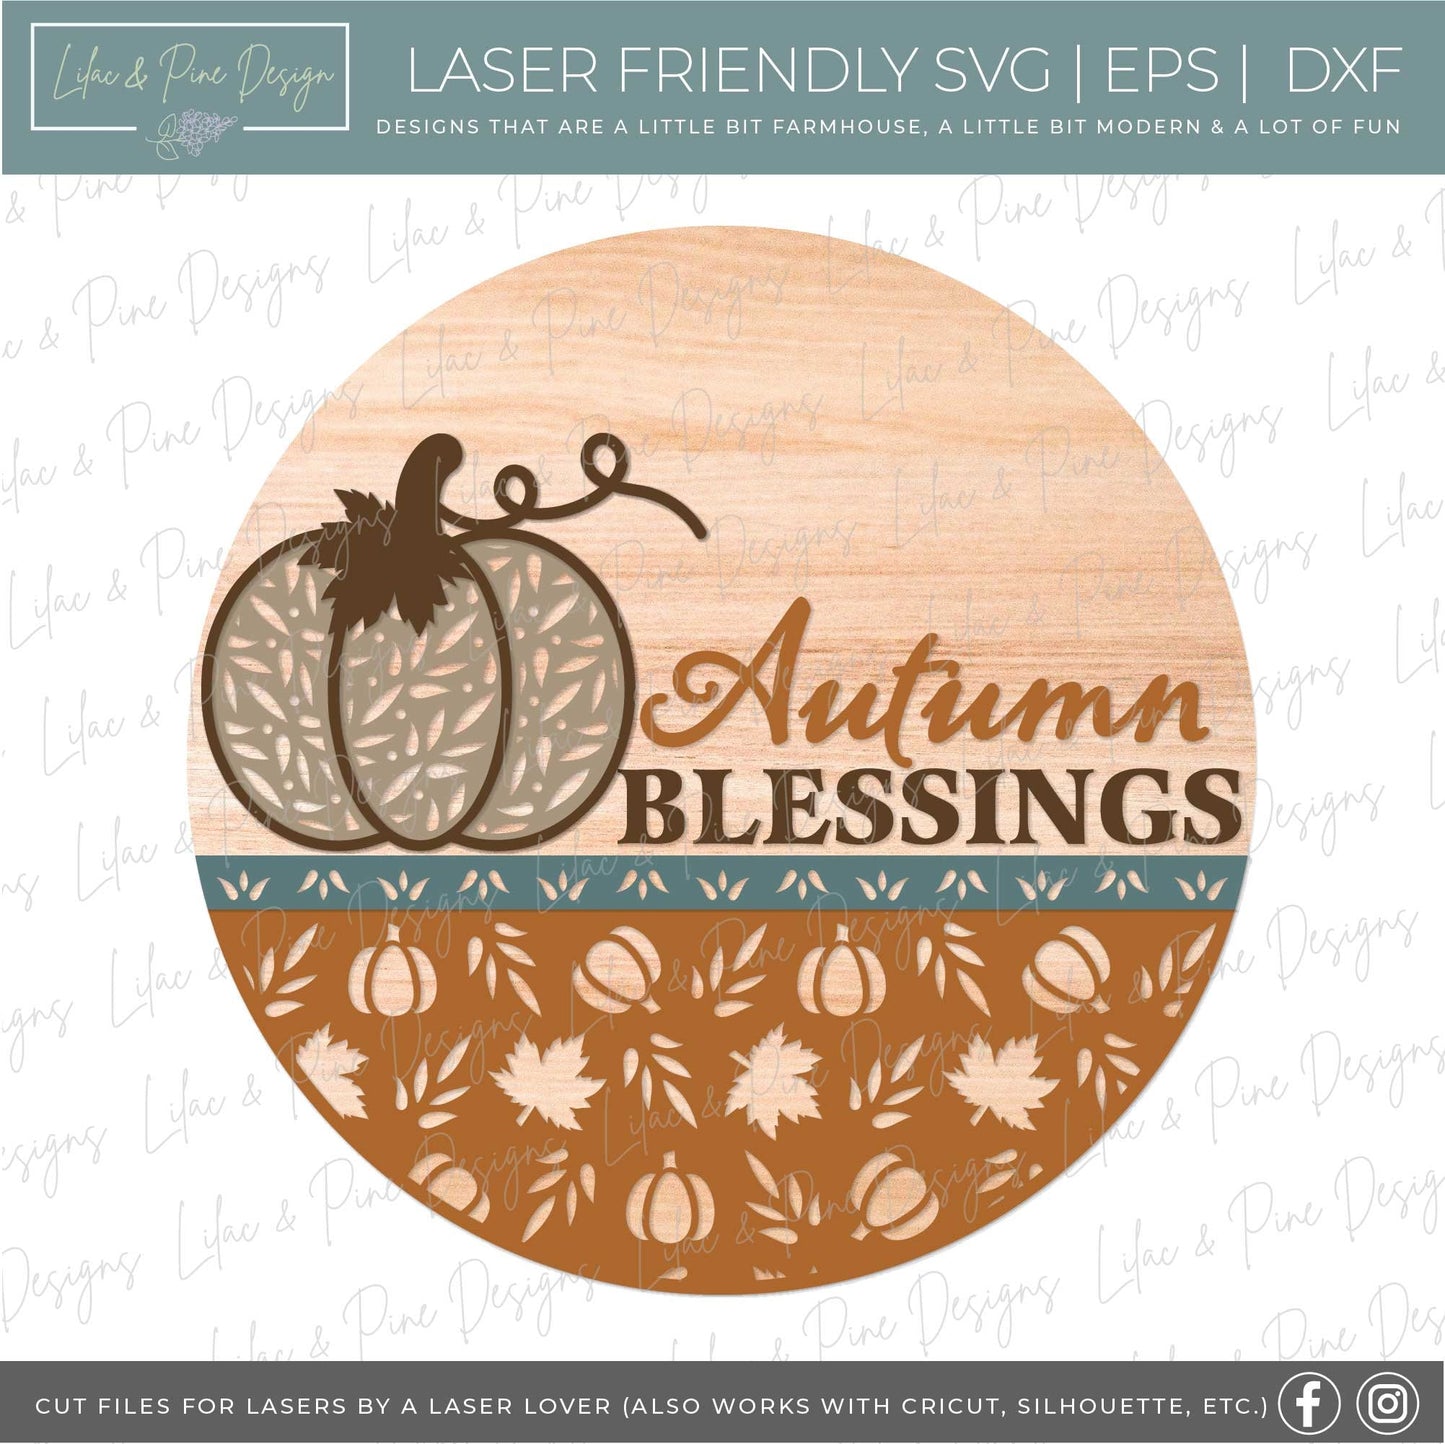 Pumpkin door hanger SVG, Fall door hanger, Autumn Blessings sign, Pumpkin welcome sign SVG, fall decor, Glowforge laser SVG, laser cut file